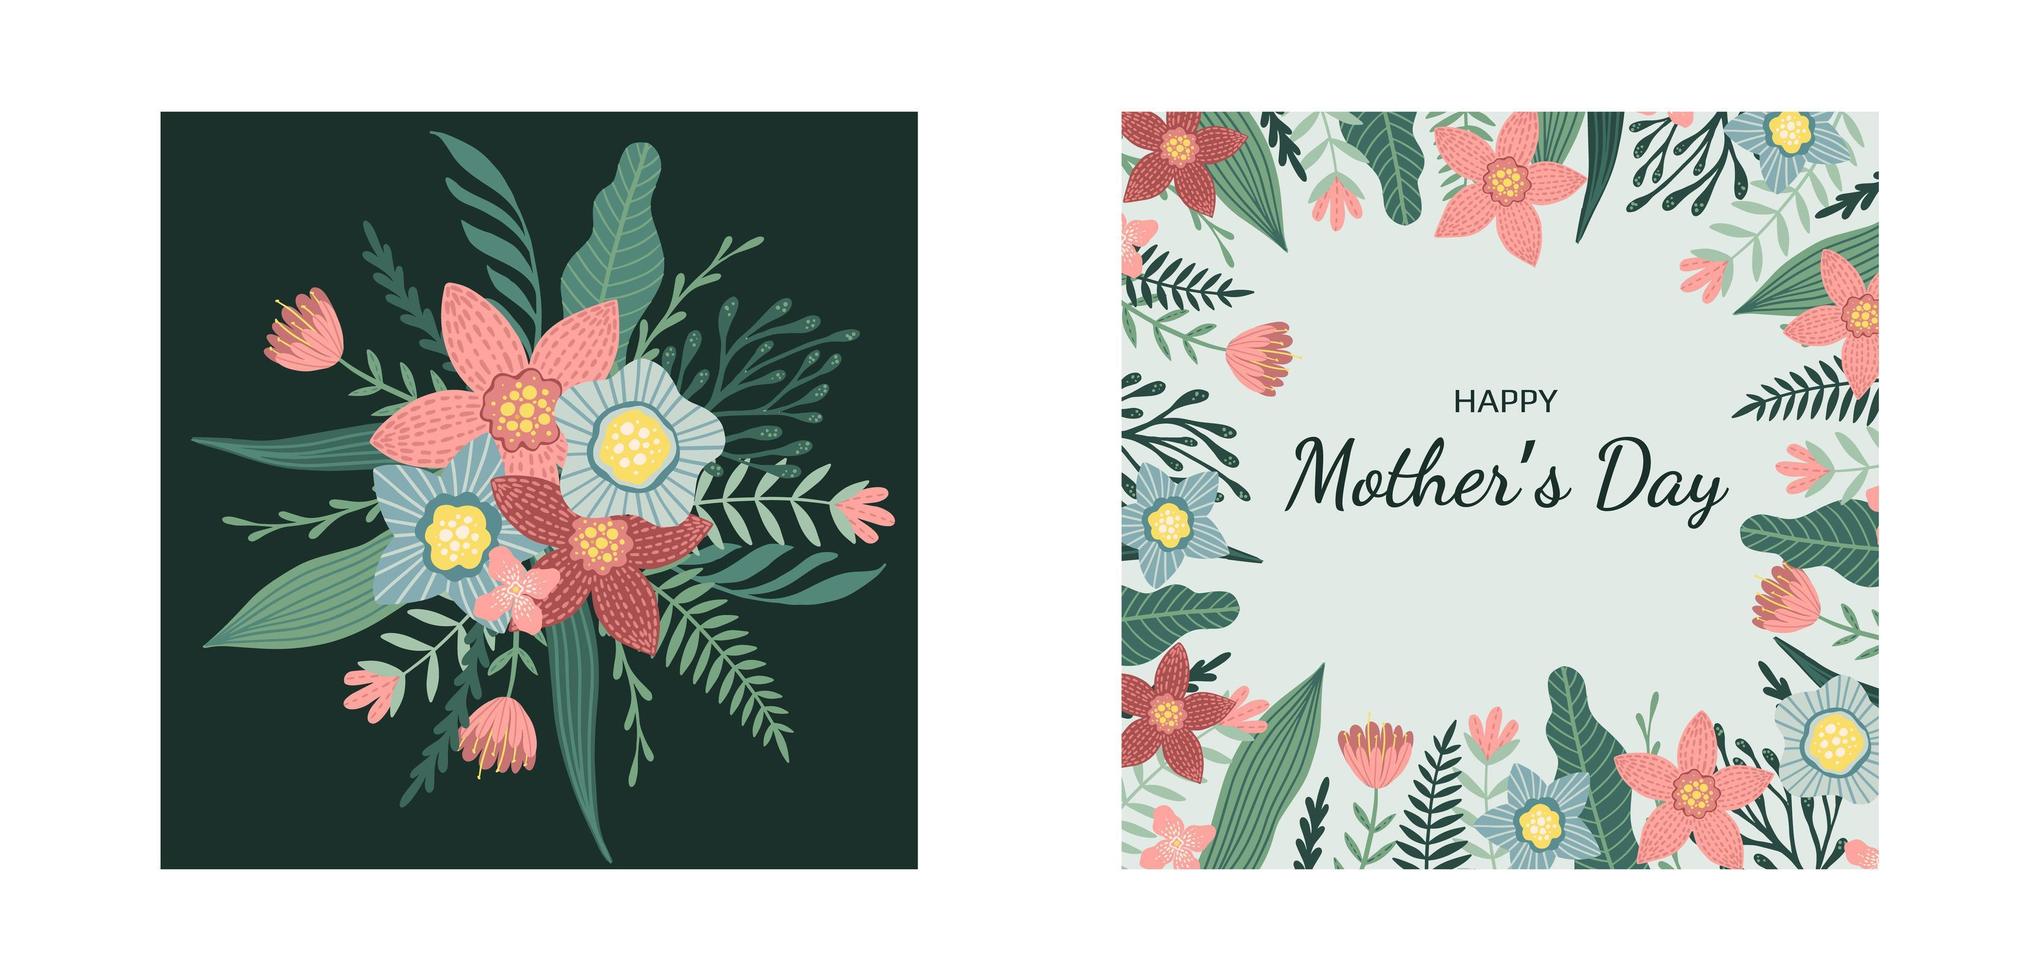 Happy Women's Day 8. März süße Karten für die Frühlingsferien. Vektorillustration eines Datums, einer Frau und eines Blumenstraußes. vektor